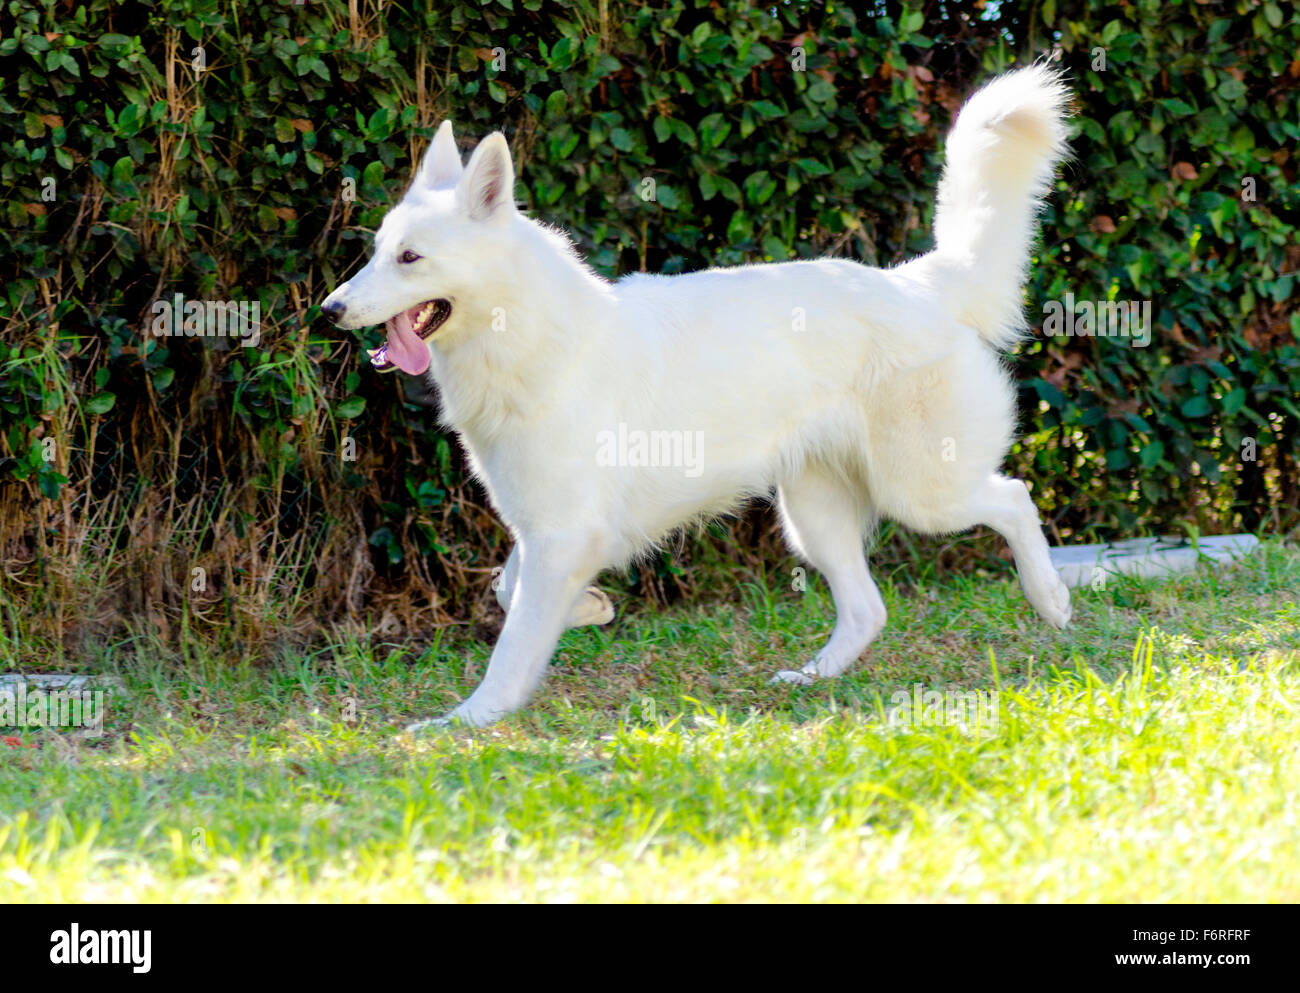 Weisser schweizer schäferhund hi-res stock photography and images - Alamy